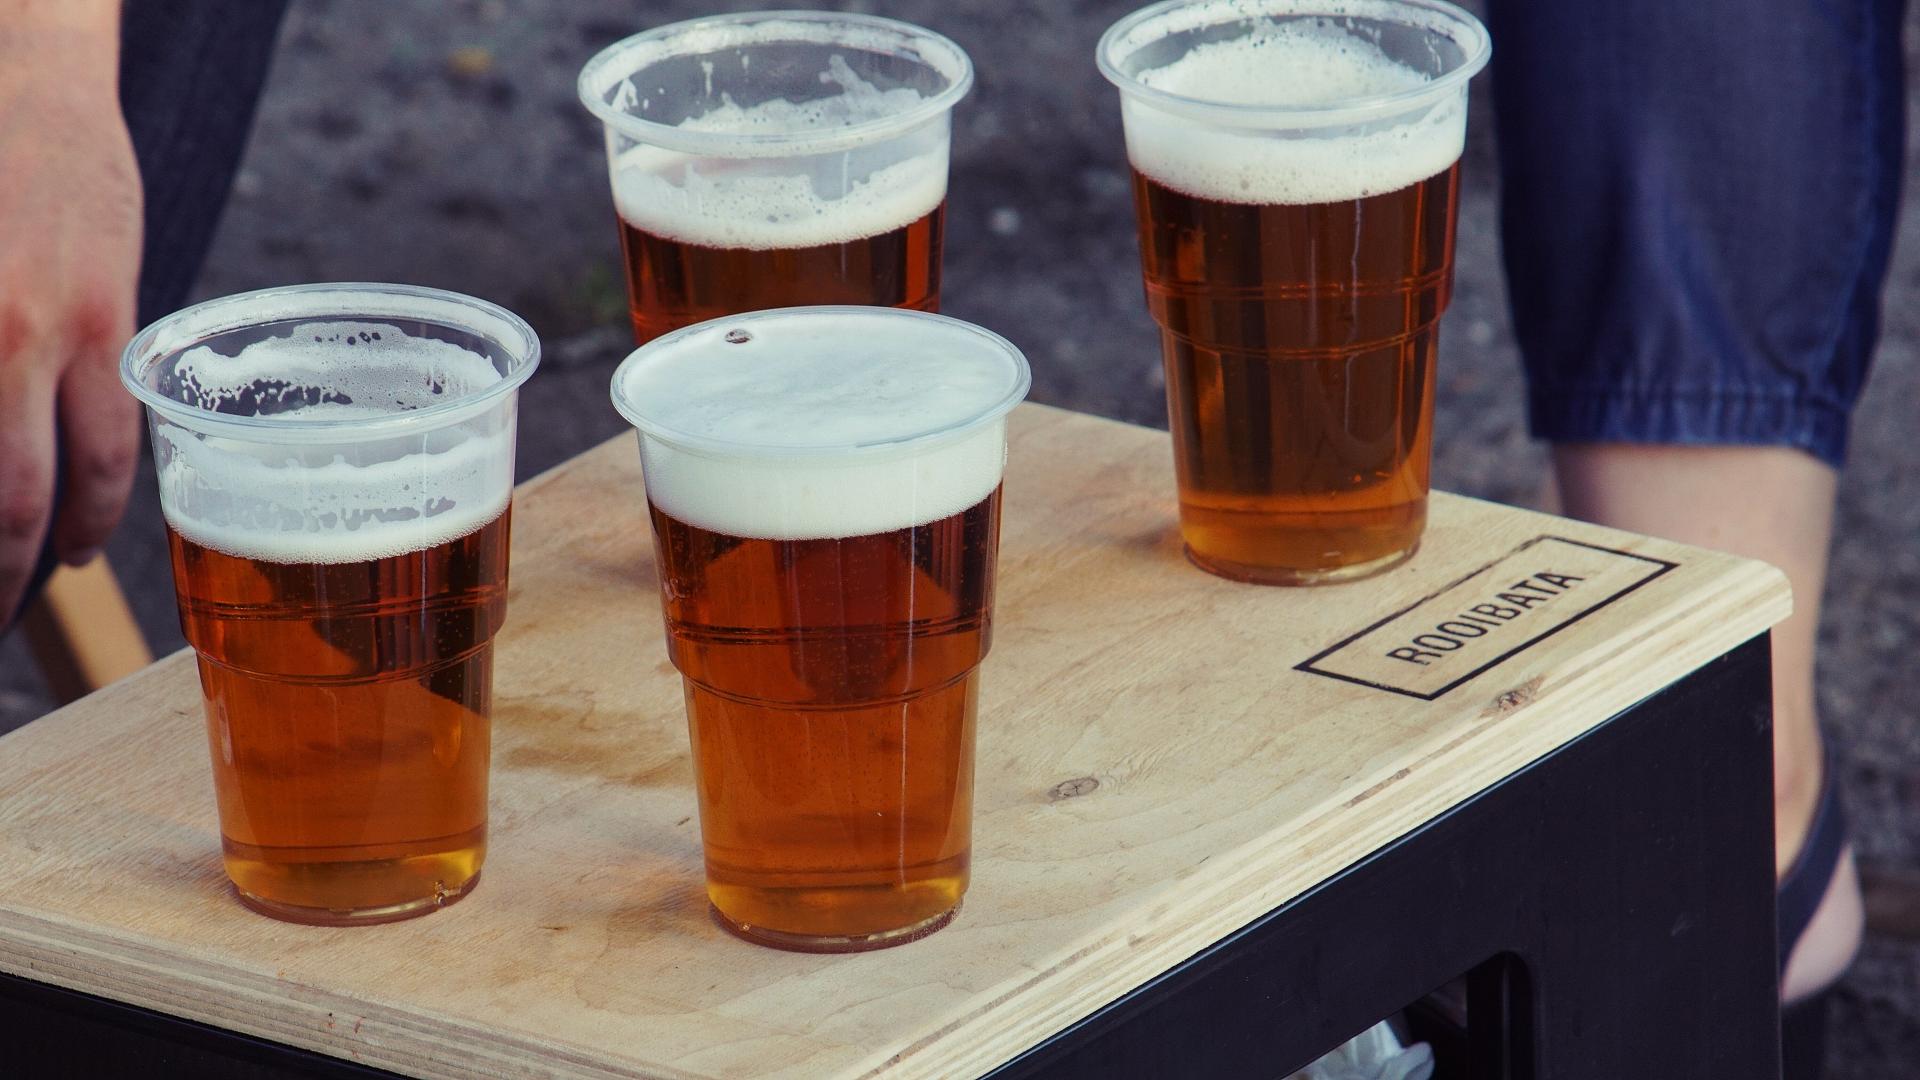 Slováci pijú menej piva, ale prichádza k nám nový alkoholový trend zo zahraničia. Či sa udrží, je otázne